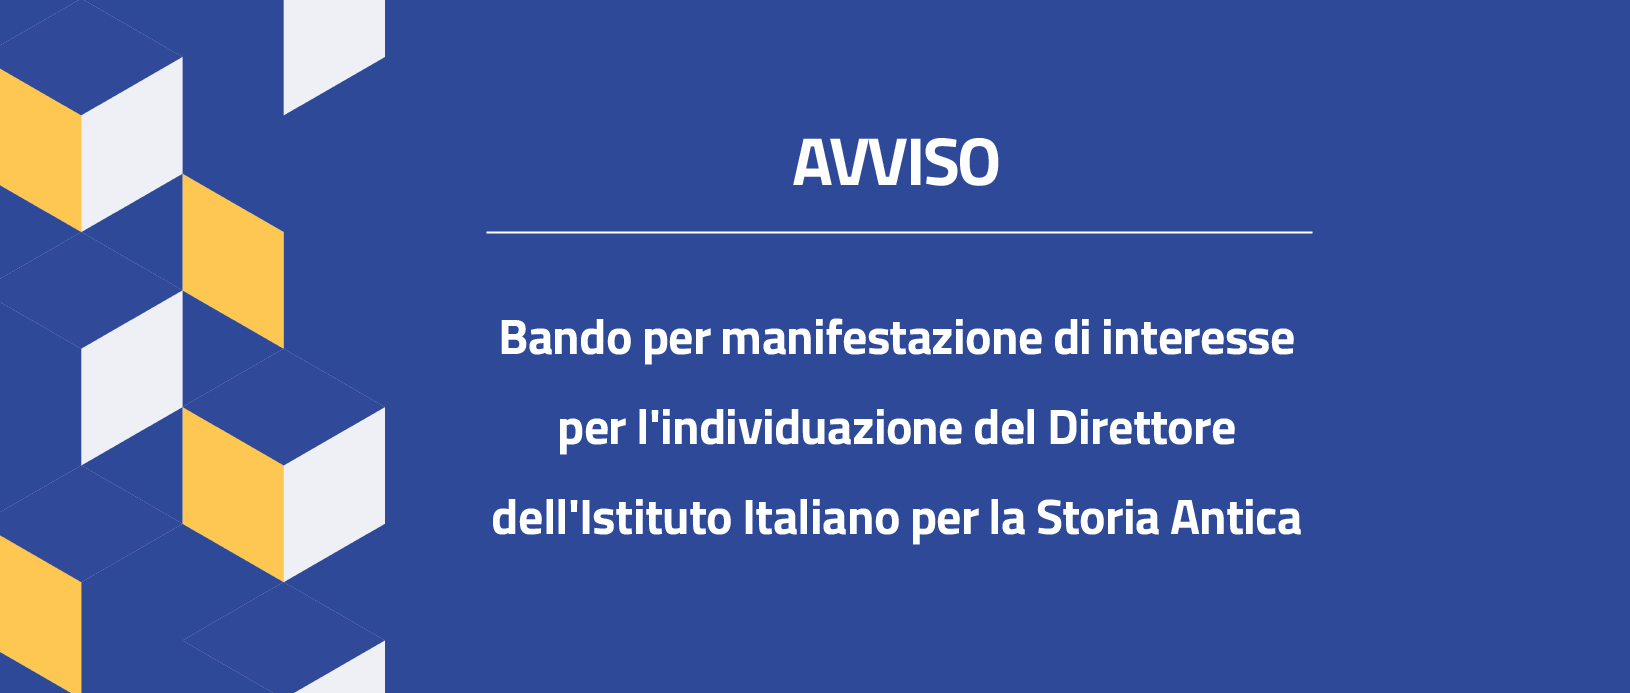 Bando Direttore Ist. Italiano di Storia Antica